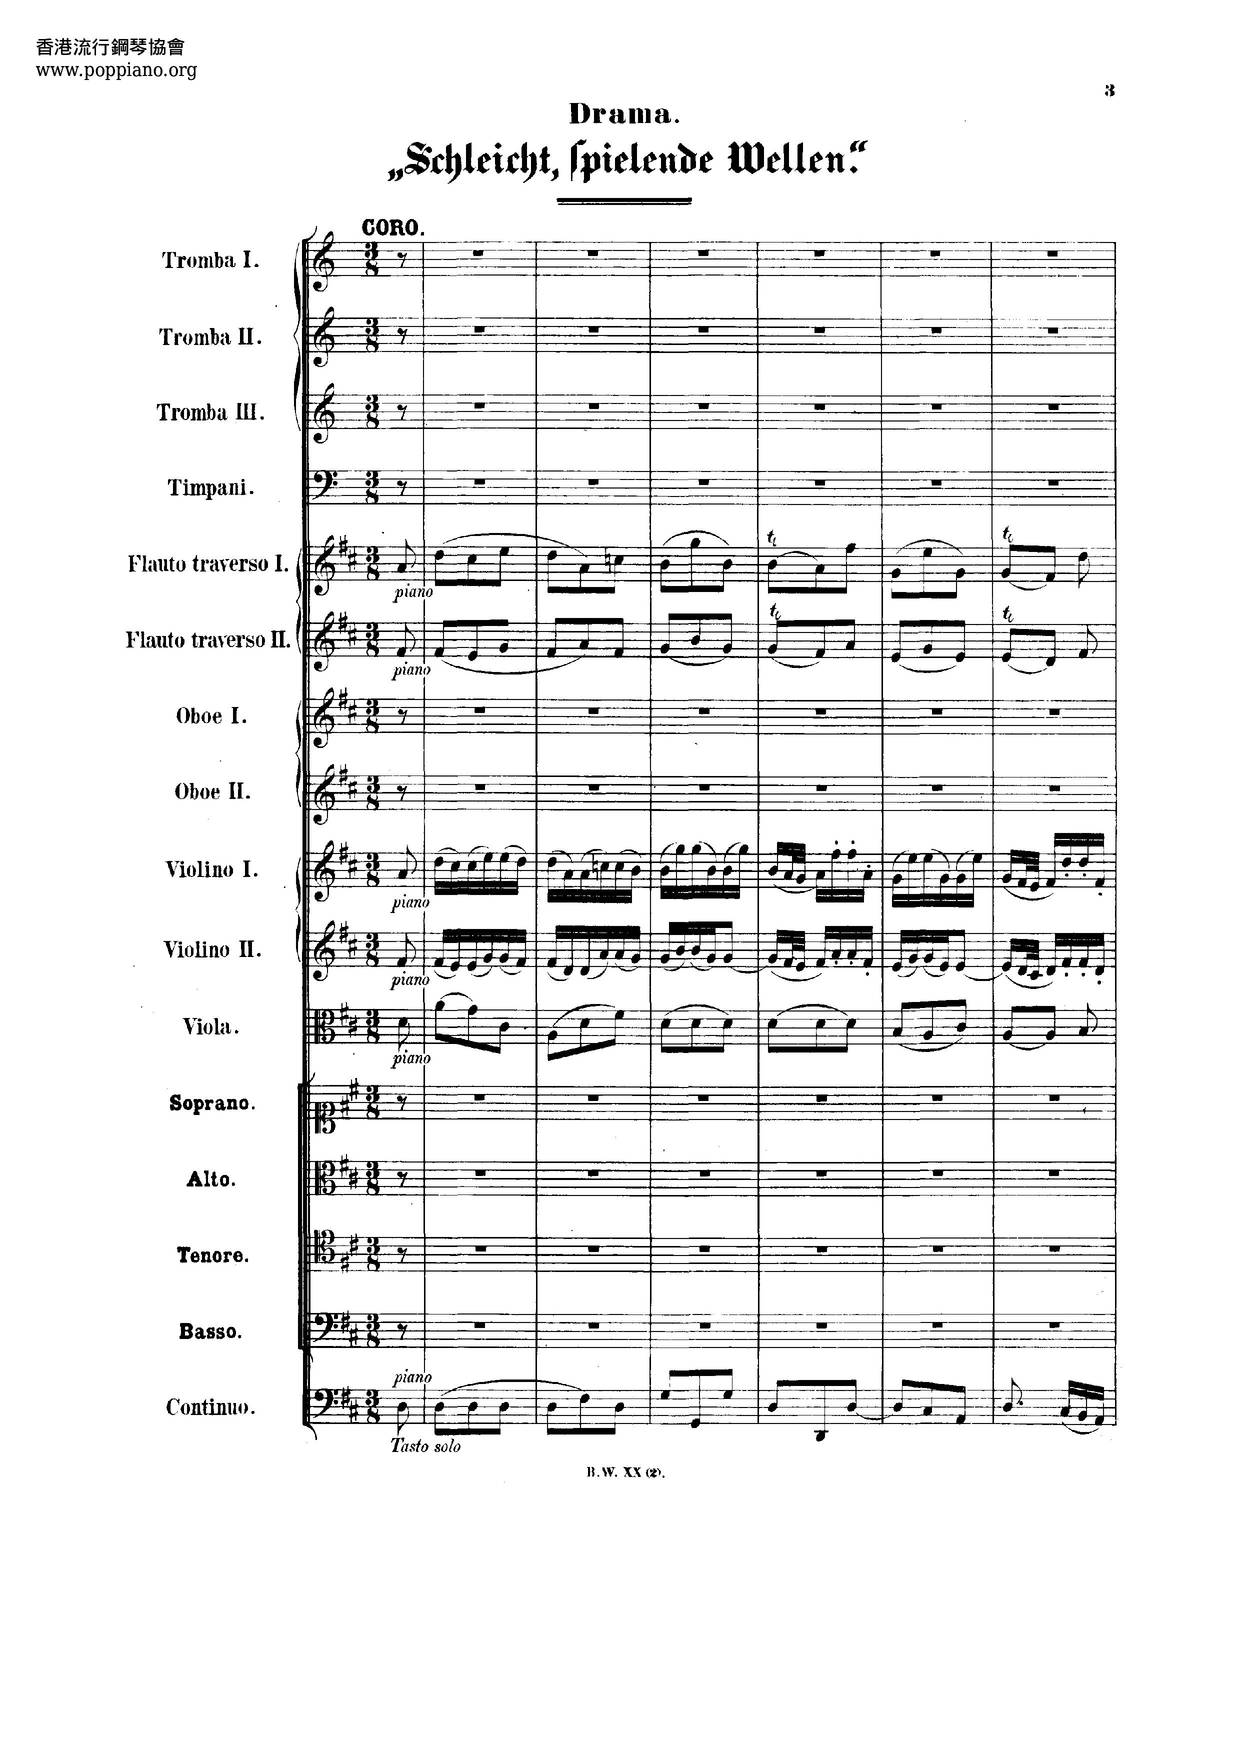 Schleicht, Spielende Wellen, BWV 206琴谱